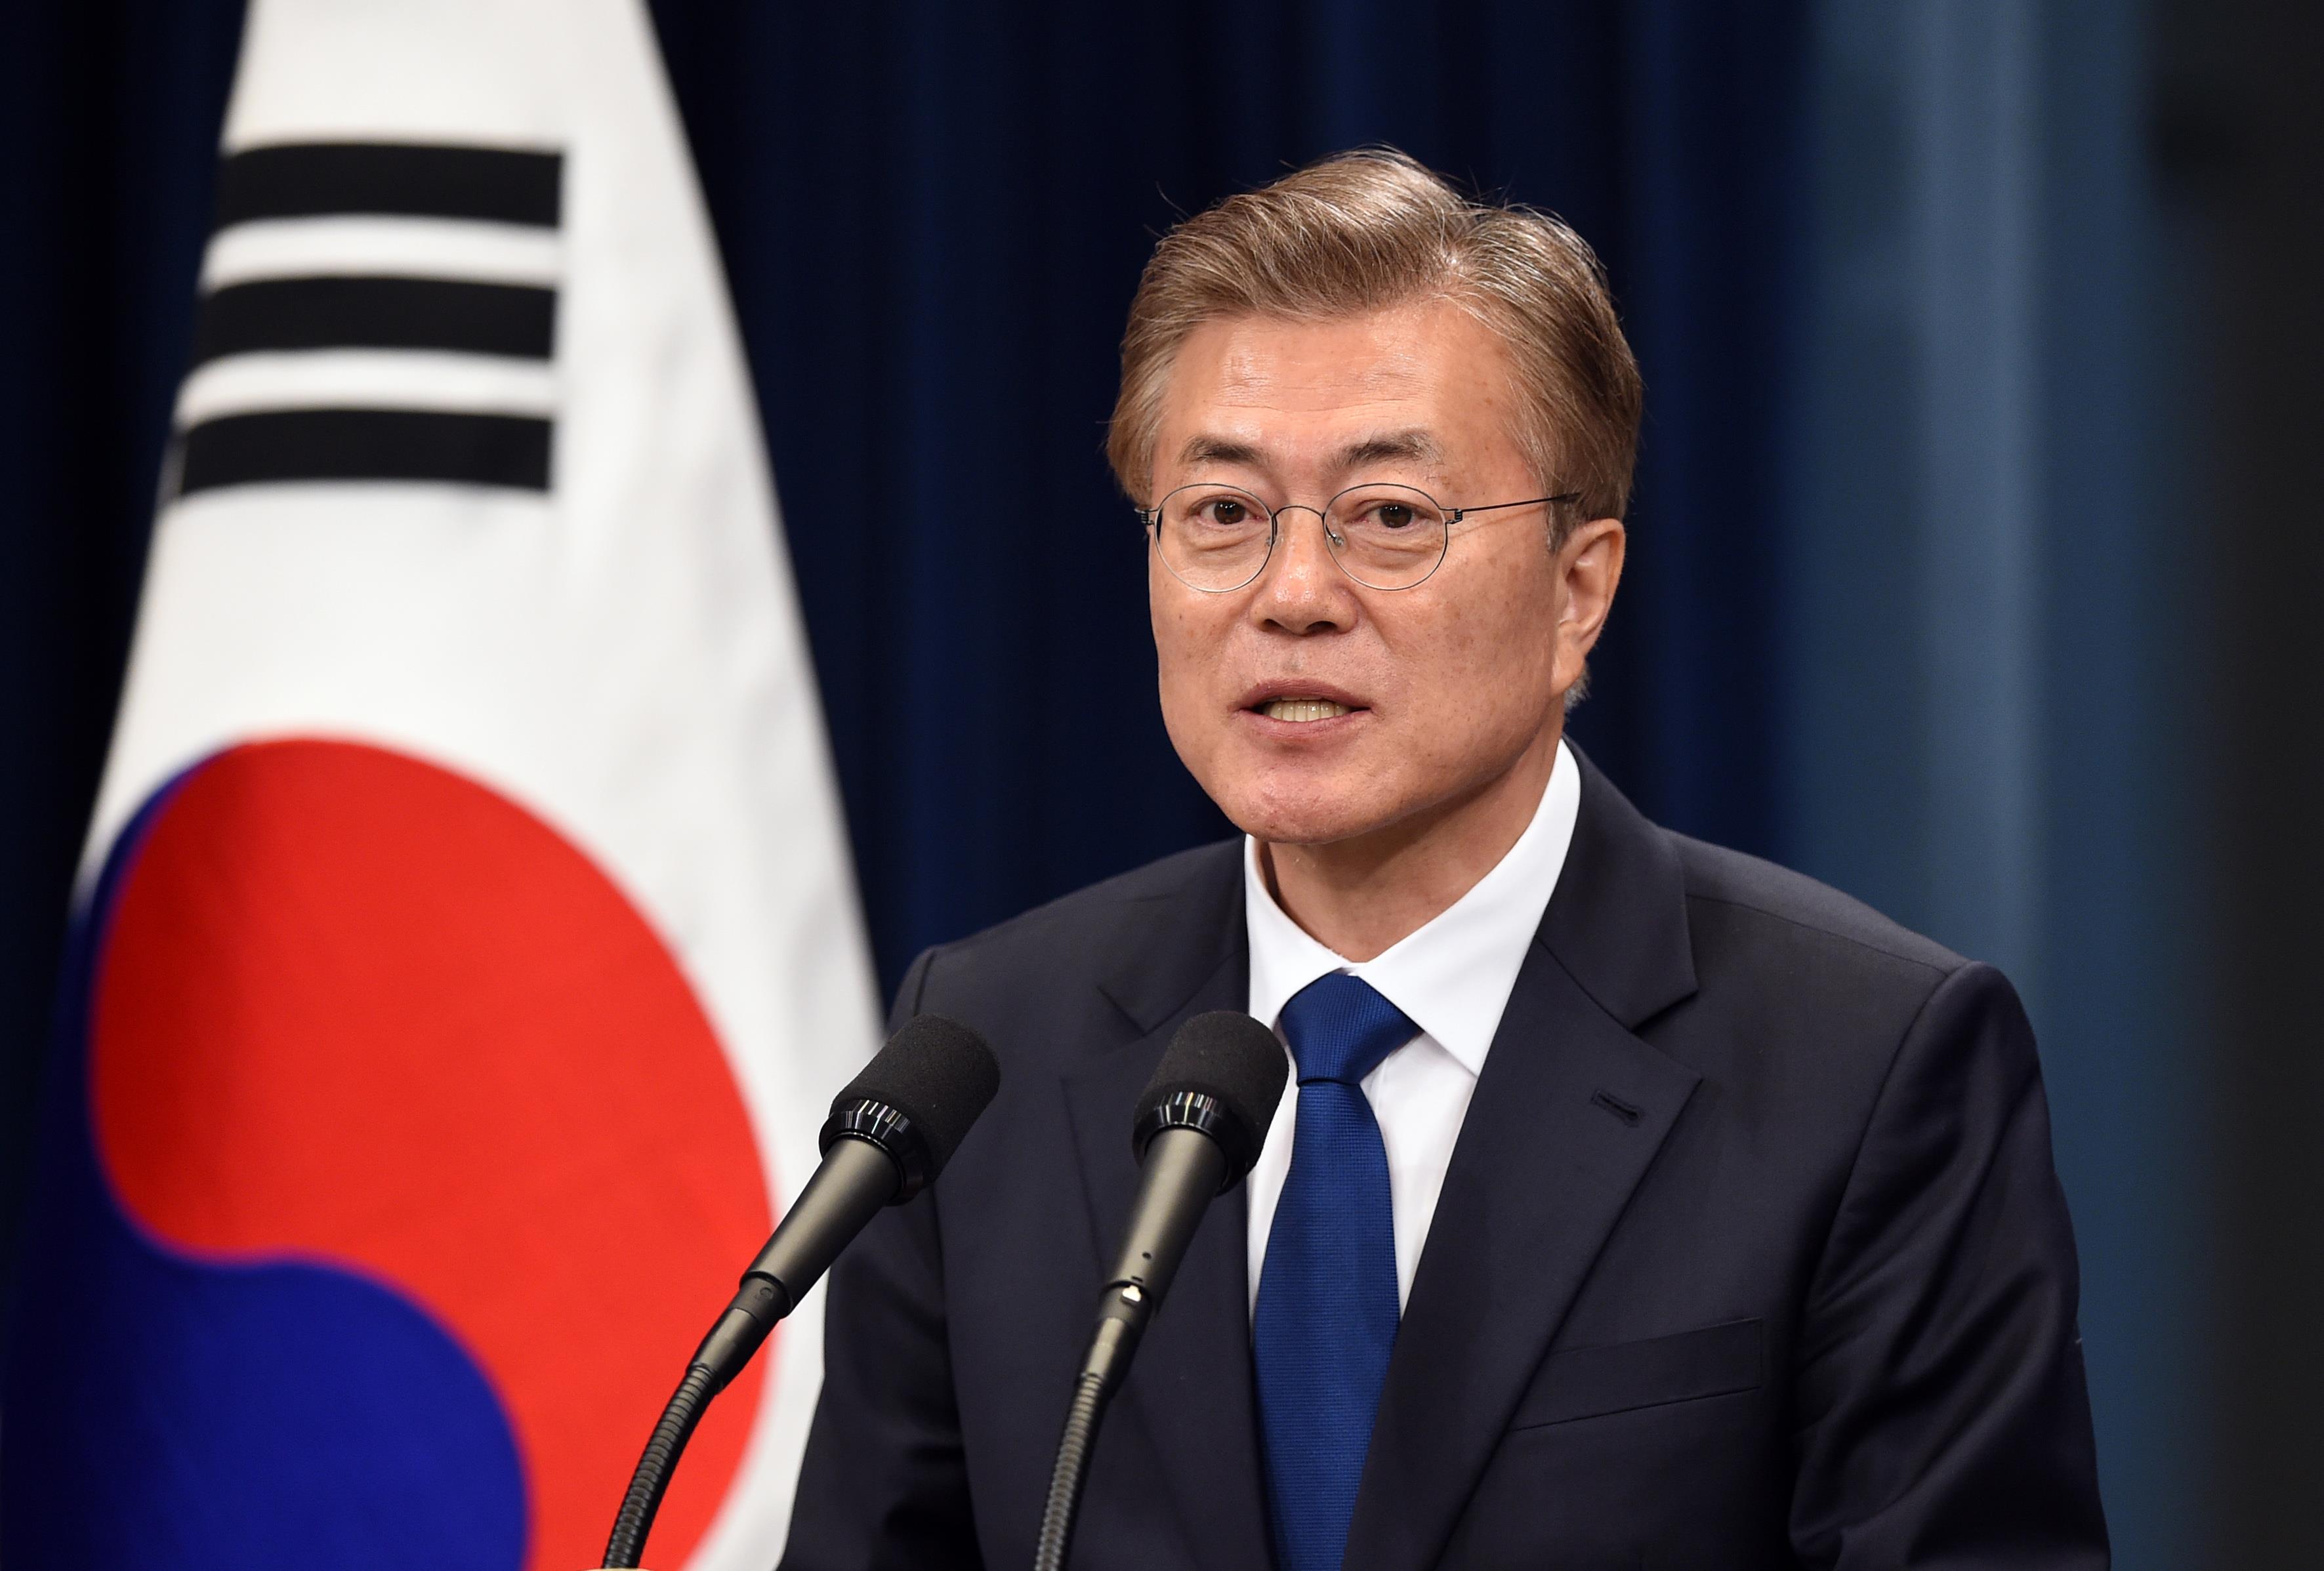 Tổng thống hàn quốc có bài phát biểu kết thúc nhiệm kỳ, kêu gọi nối lại đàm phán với Triều Tiên